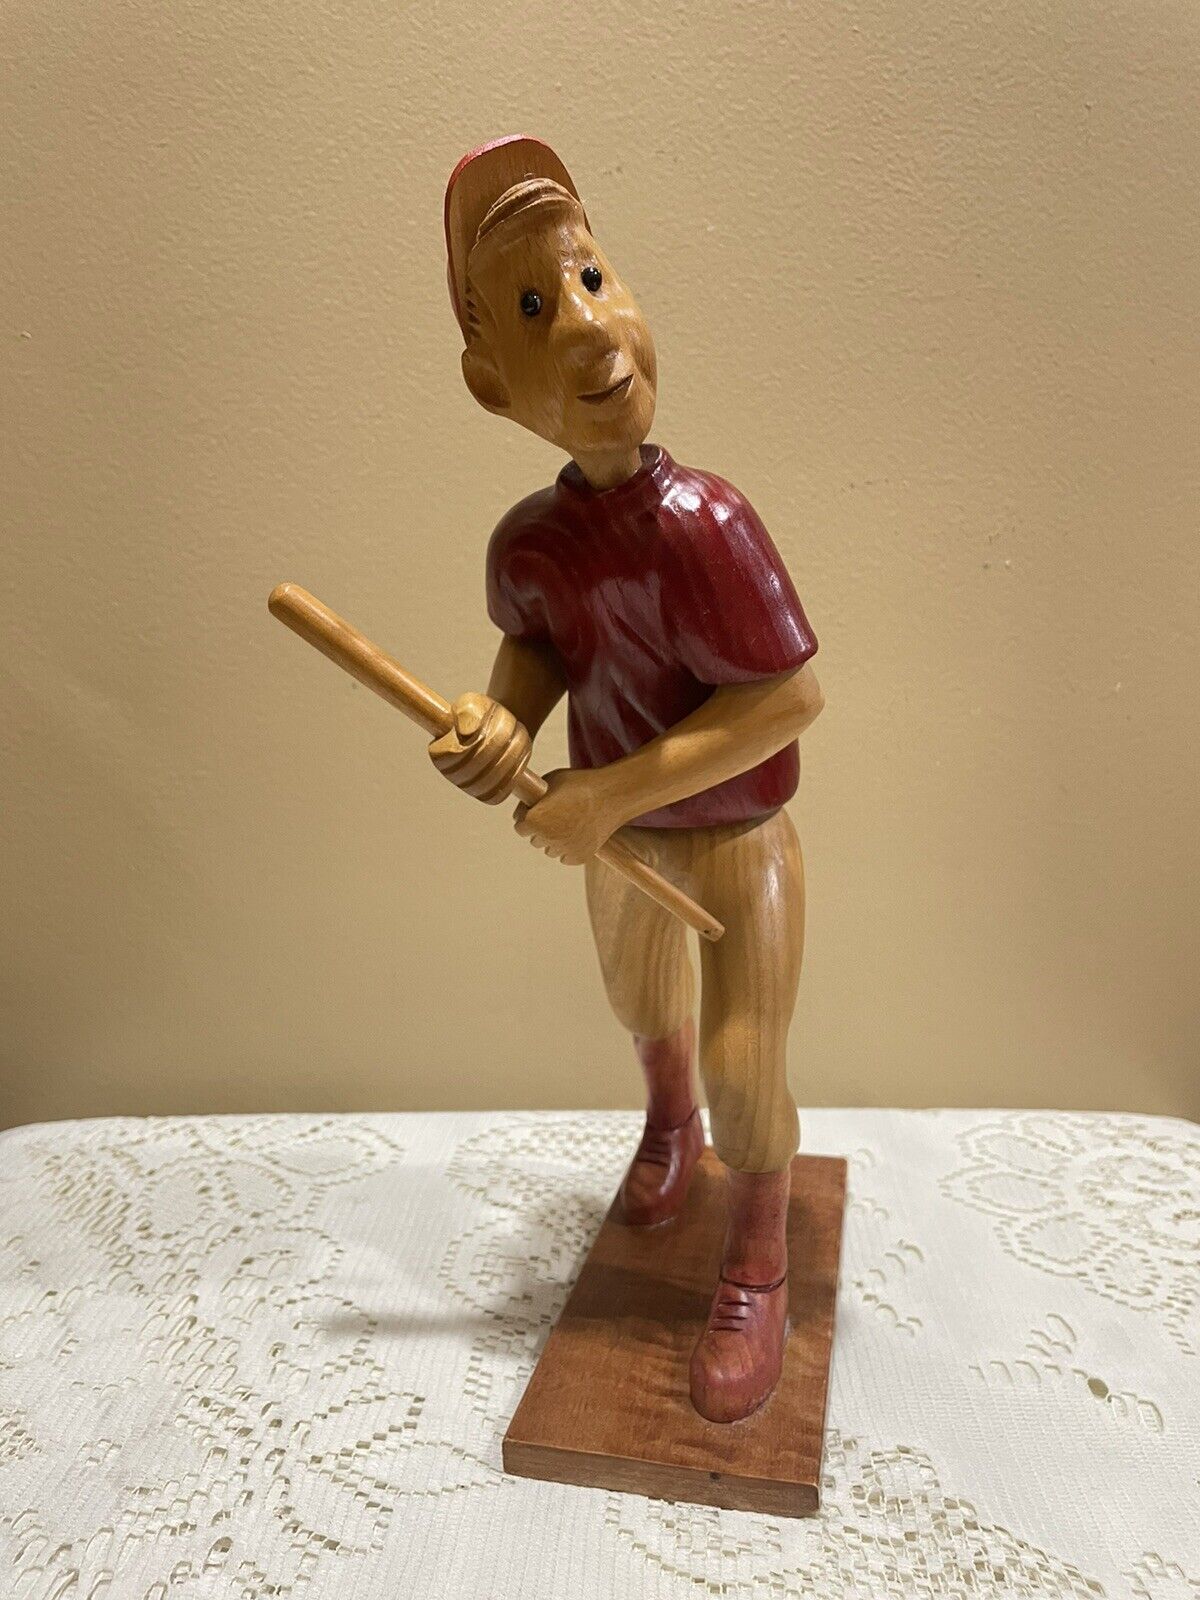 VTg Hand Carved Romer Wooden Baseball Player Figurine 